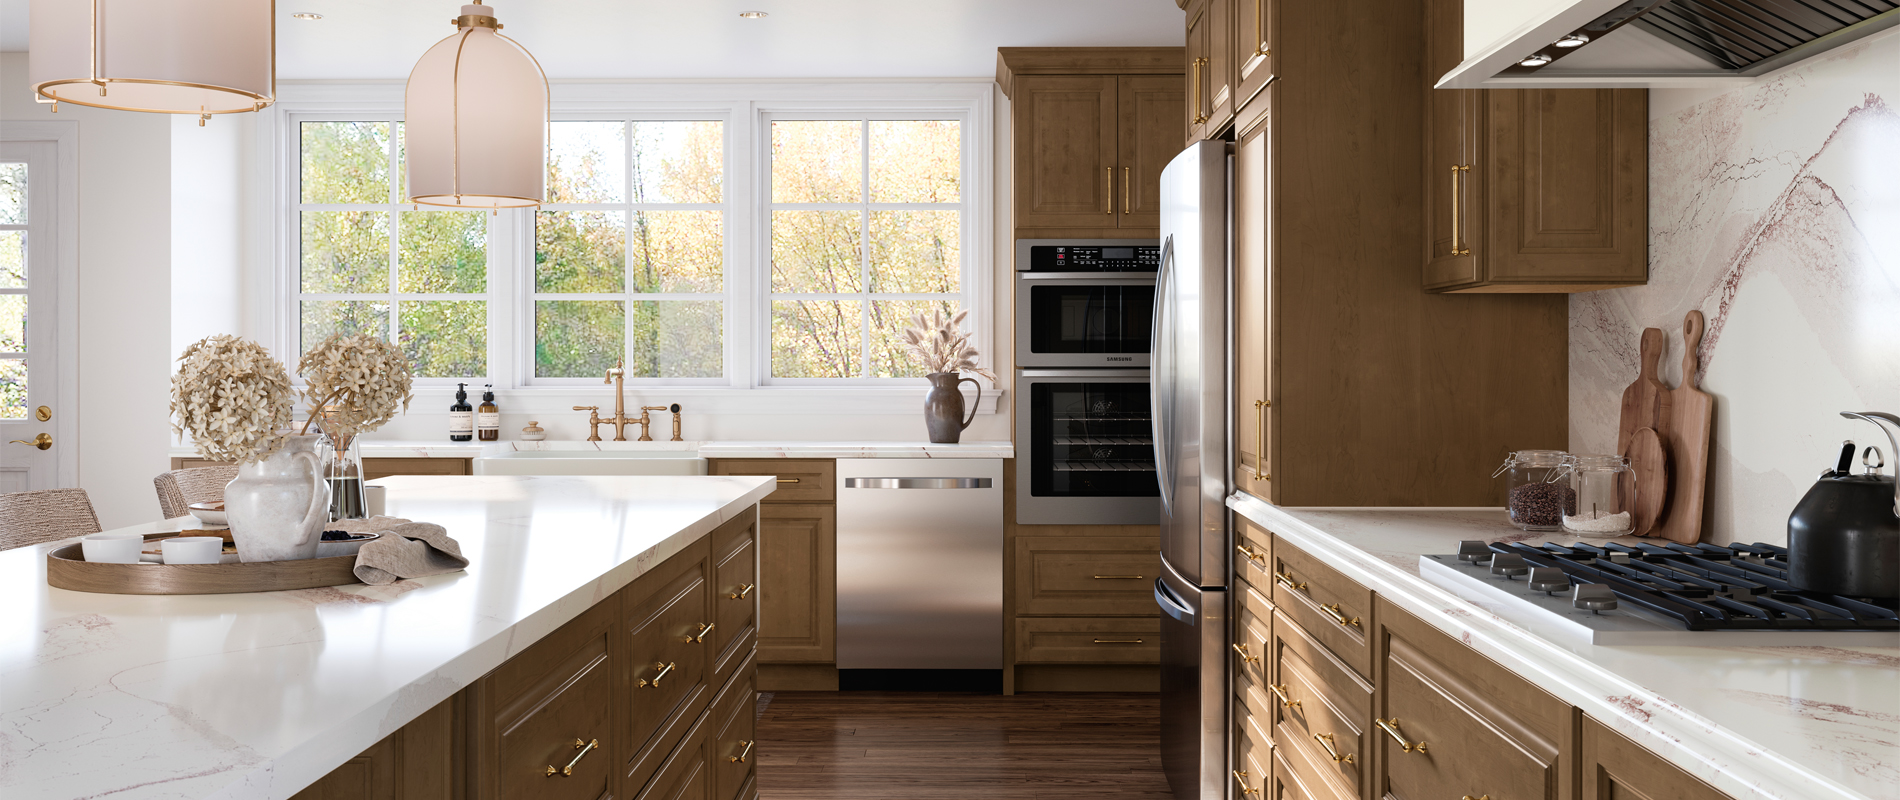 Bexley Pulls - Modern Home Decor - Room & Board  Modern kitchen handles,  Kitchen cabinet design, Interior design kitchen